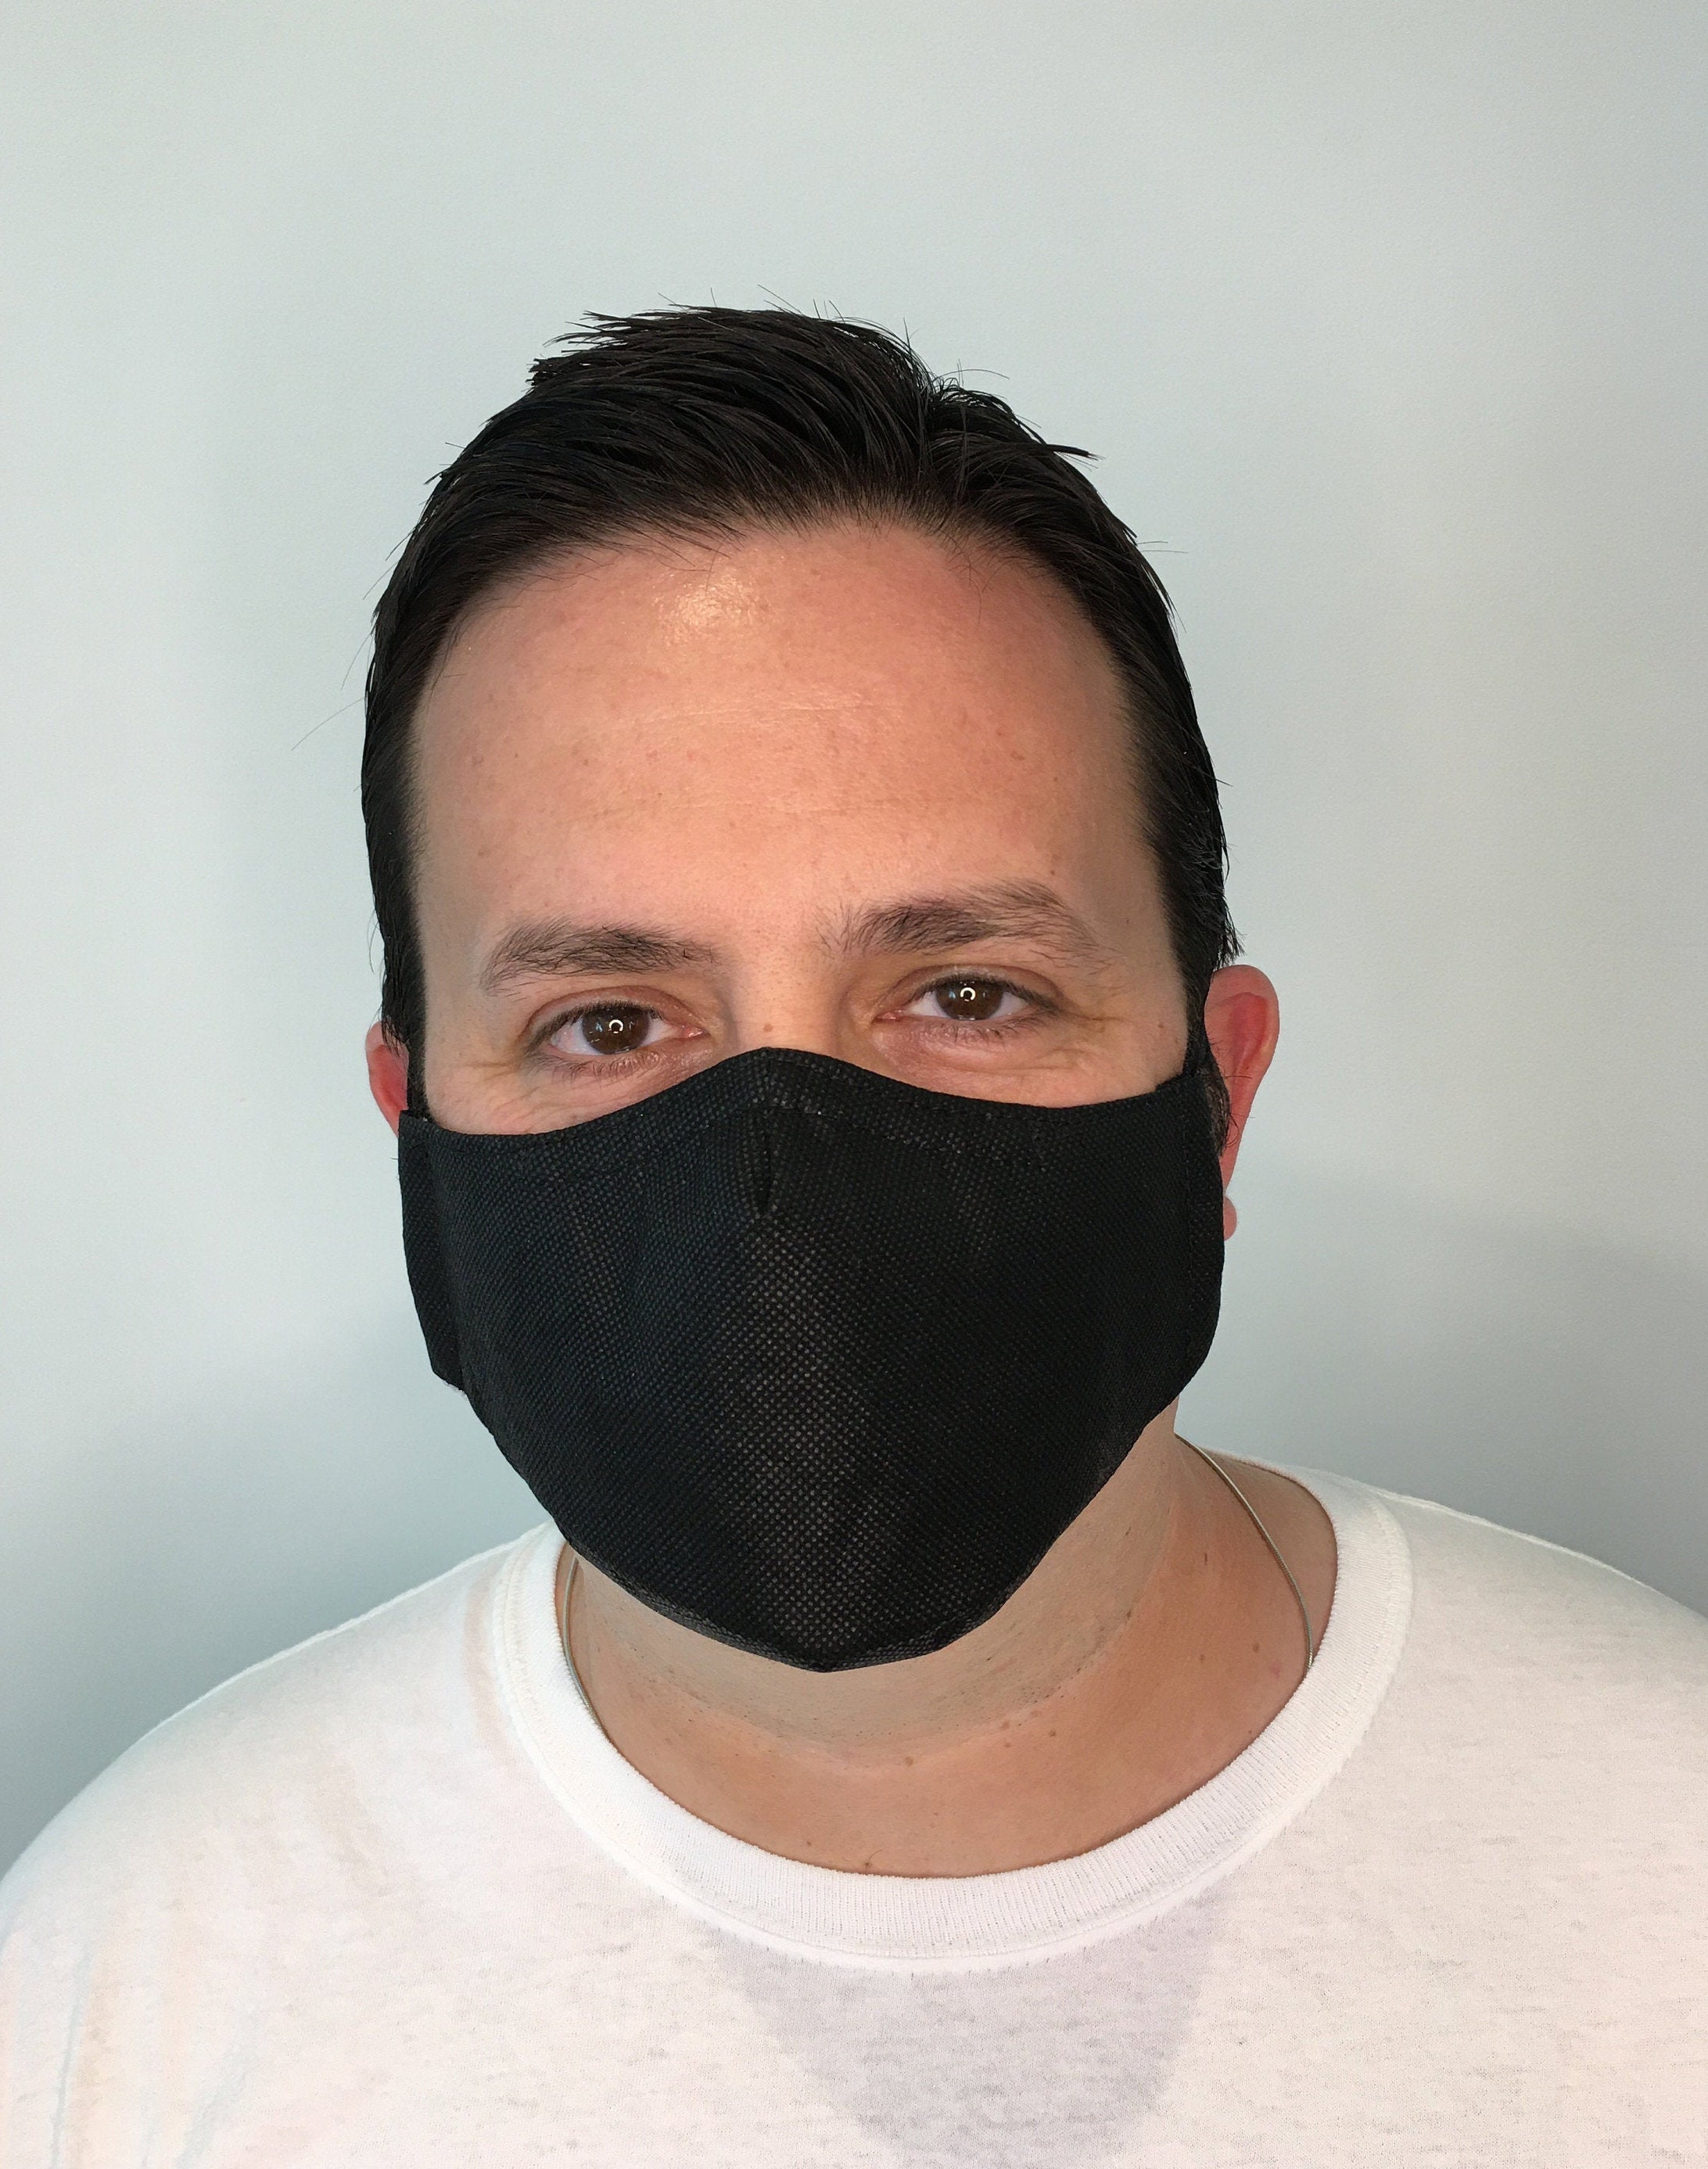 Black Face Mask For Men - Polypropylene Face Mask Filter Pocket ...